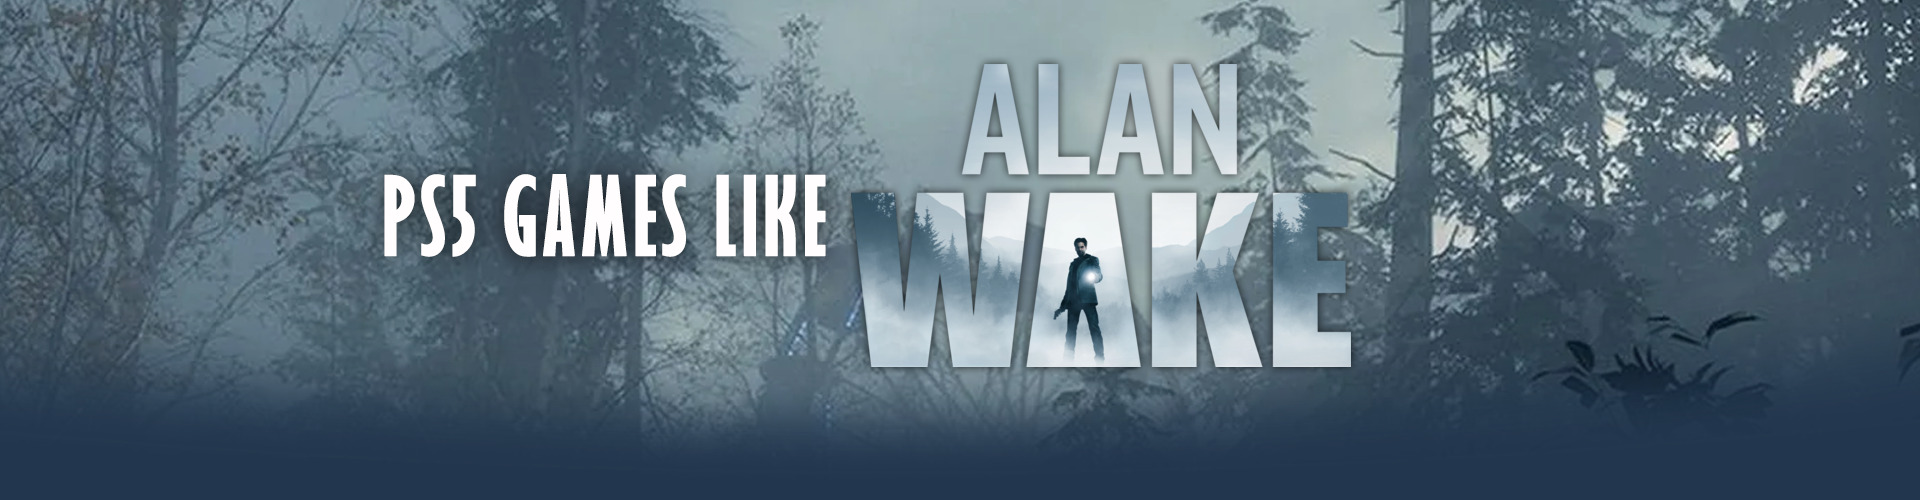 Juegos de PS5 como Alan Wake